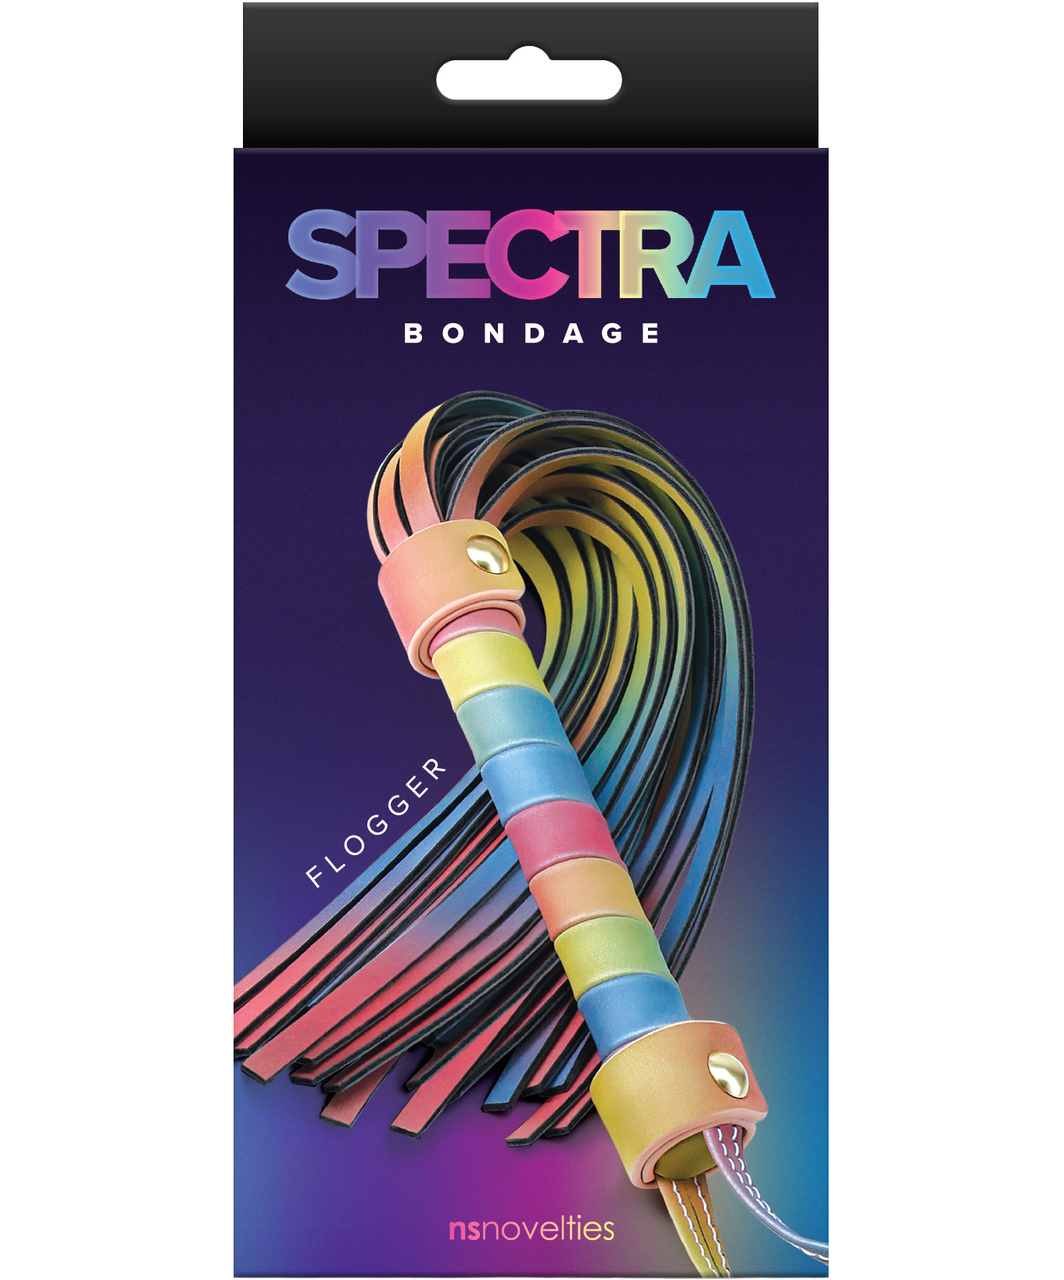 NS Novelties Spectra Bondage flogger